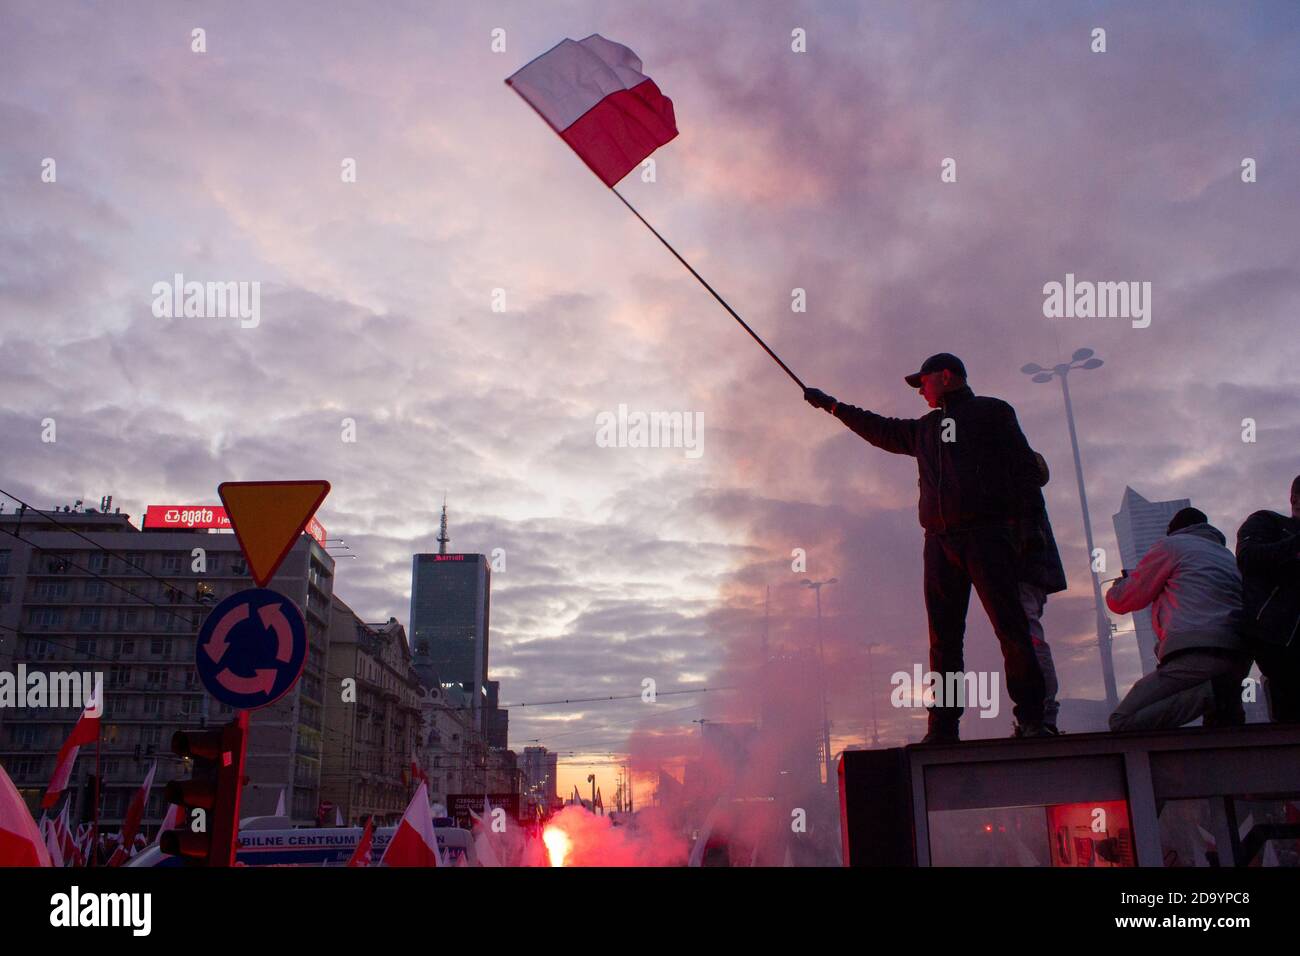 Varsovie, Pologne - 11 novembre 2019 : Journée de l'indépendance de la Pologne, manifestation à Varsovie, personnes marchant avec des drapeaux polonais nationaux Banque D'Images